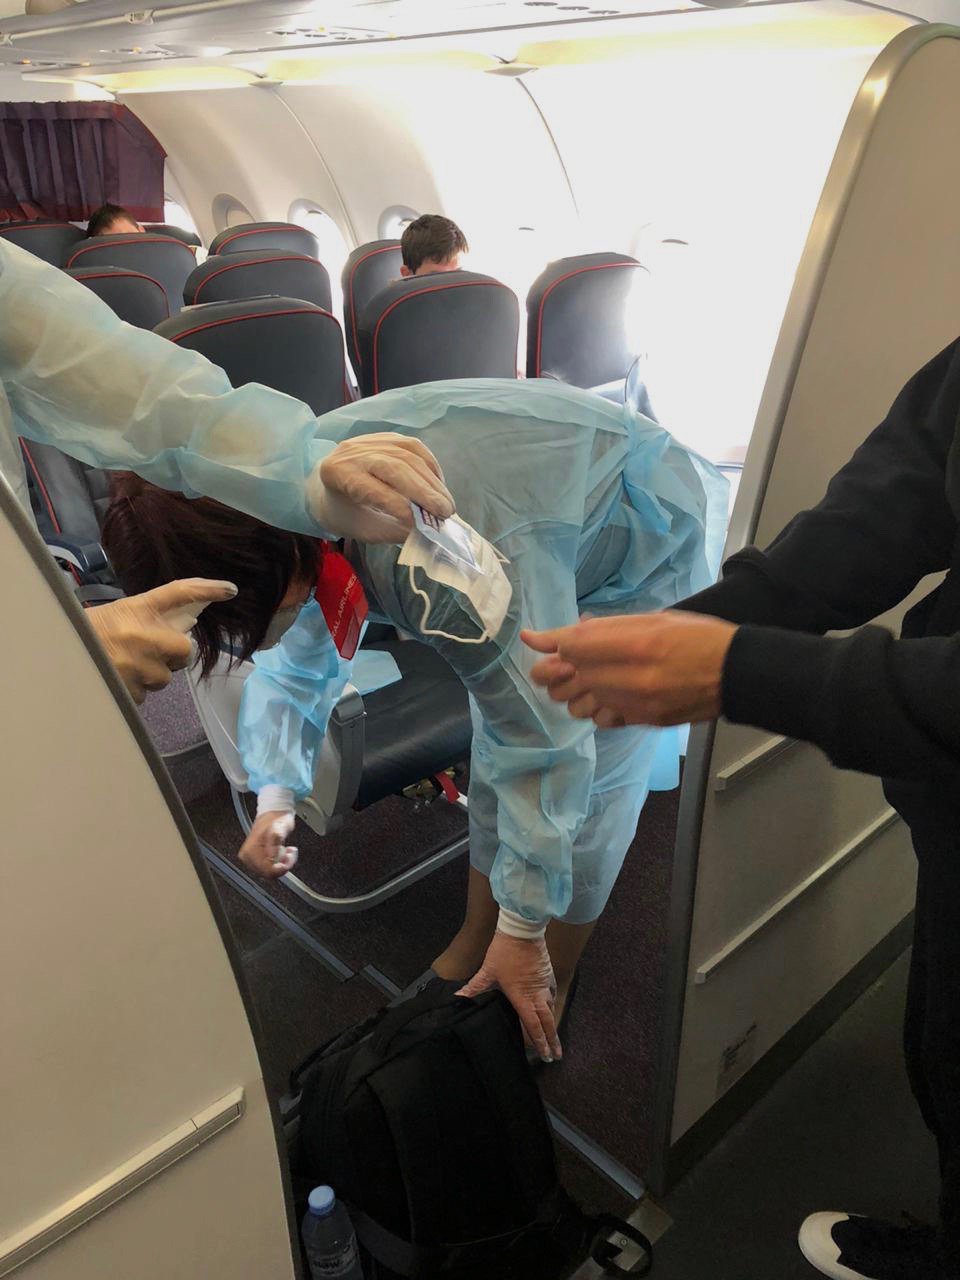 Прибывший 19 апреля в Екатеринбург рейс из Таиланда признан неблагополучным по эпидемиологическим показателям.